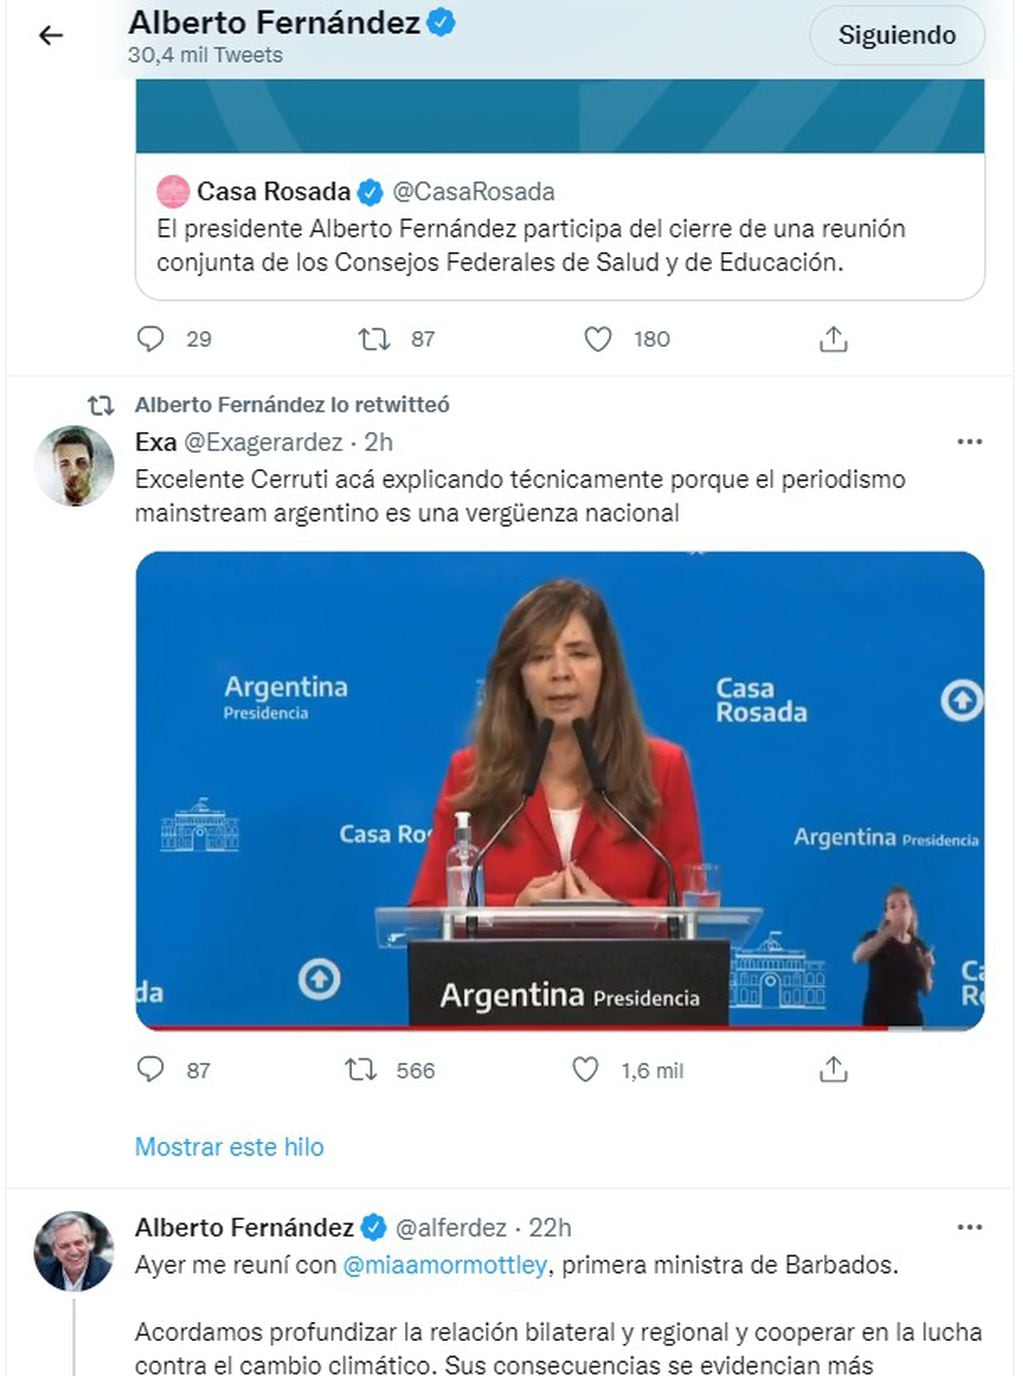 Alberto Fernández avaló un mensaje contra el periodismo (Twitter @alferdez)